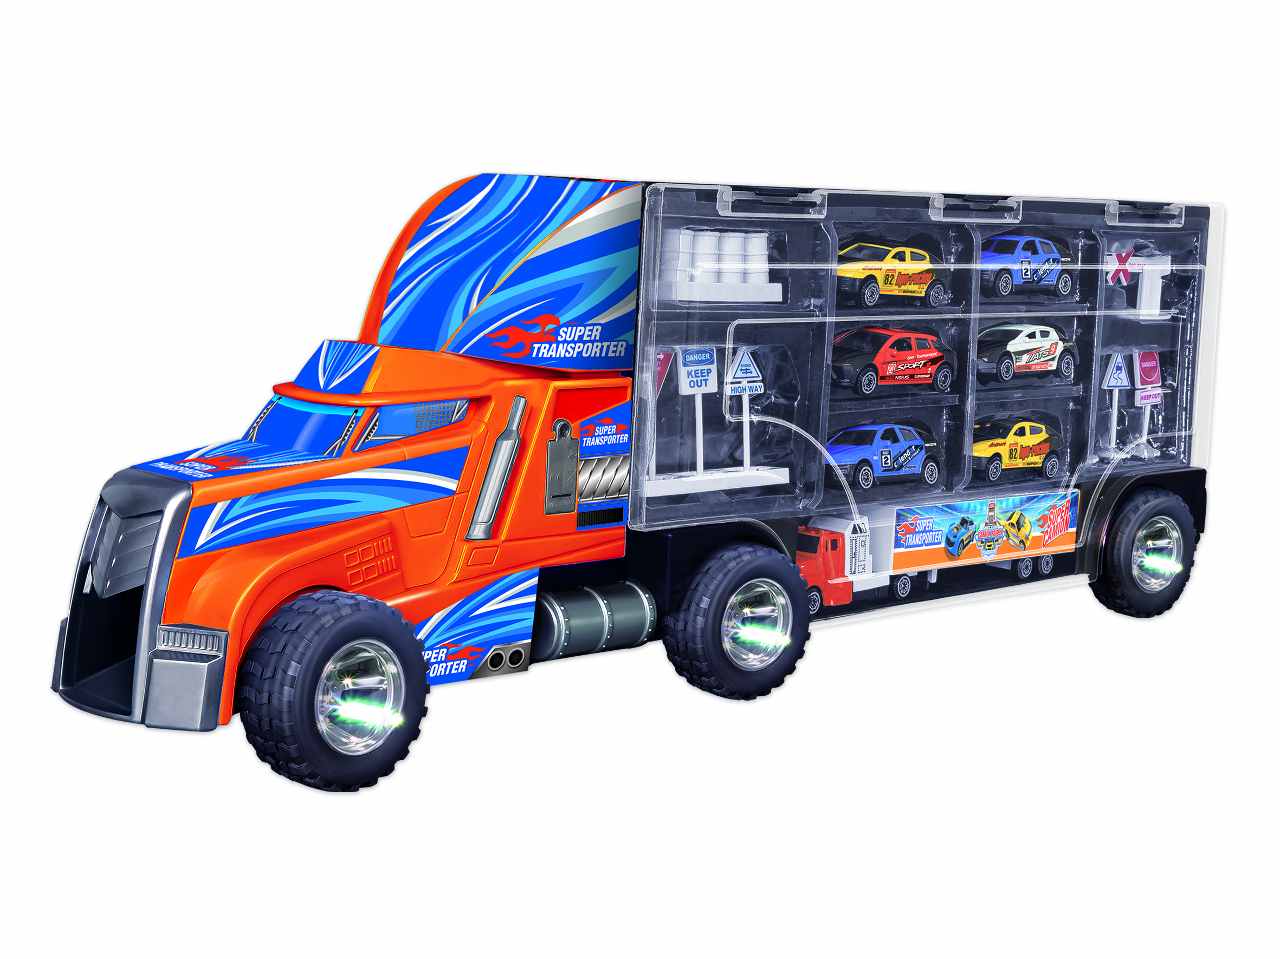 Super camion c/6 veicoli die cast 11185